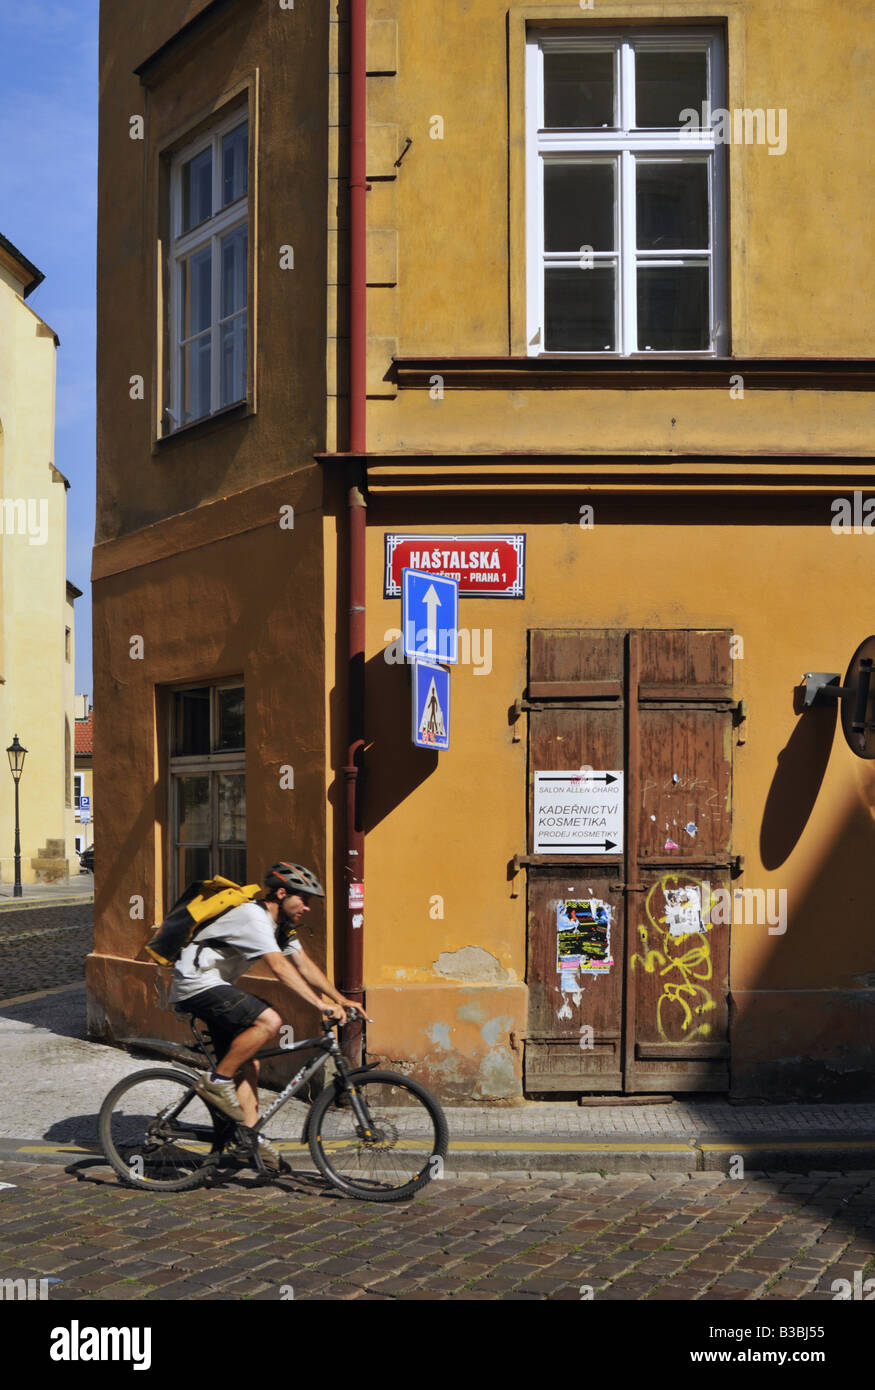 Le port du casque cycliste équestre sur la rue Hastalska pavées dans le quartier juif de Prague Banque D'Images